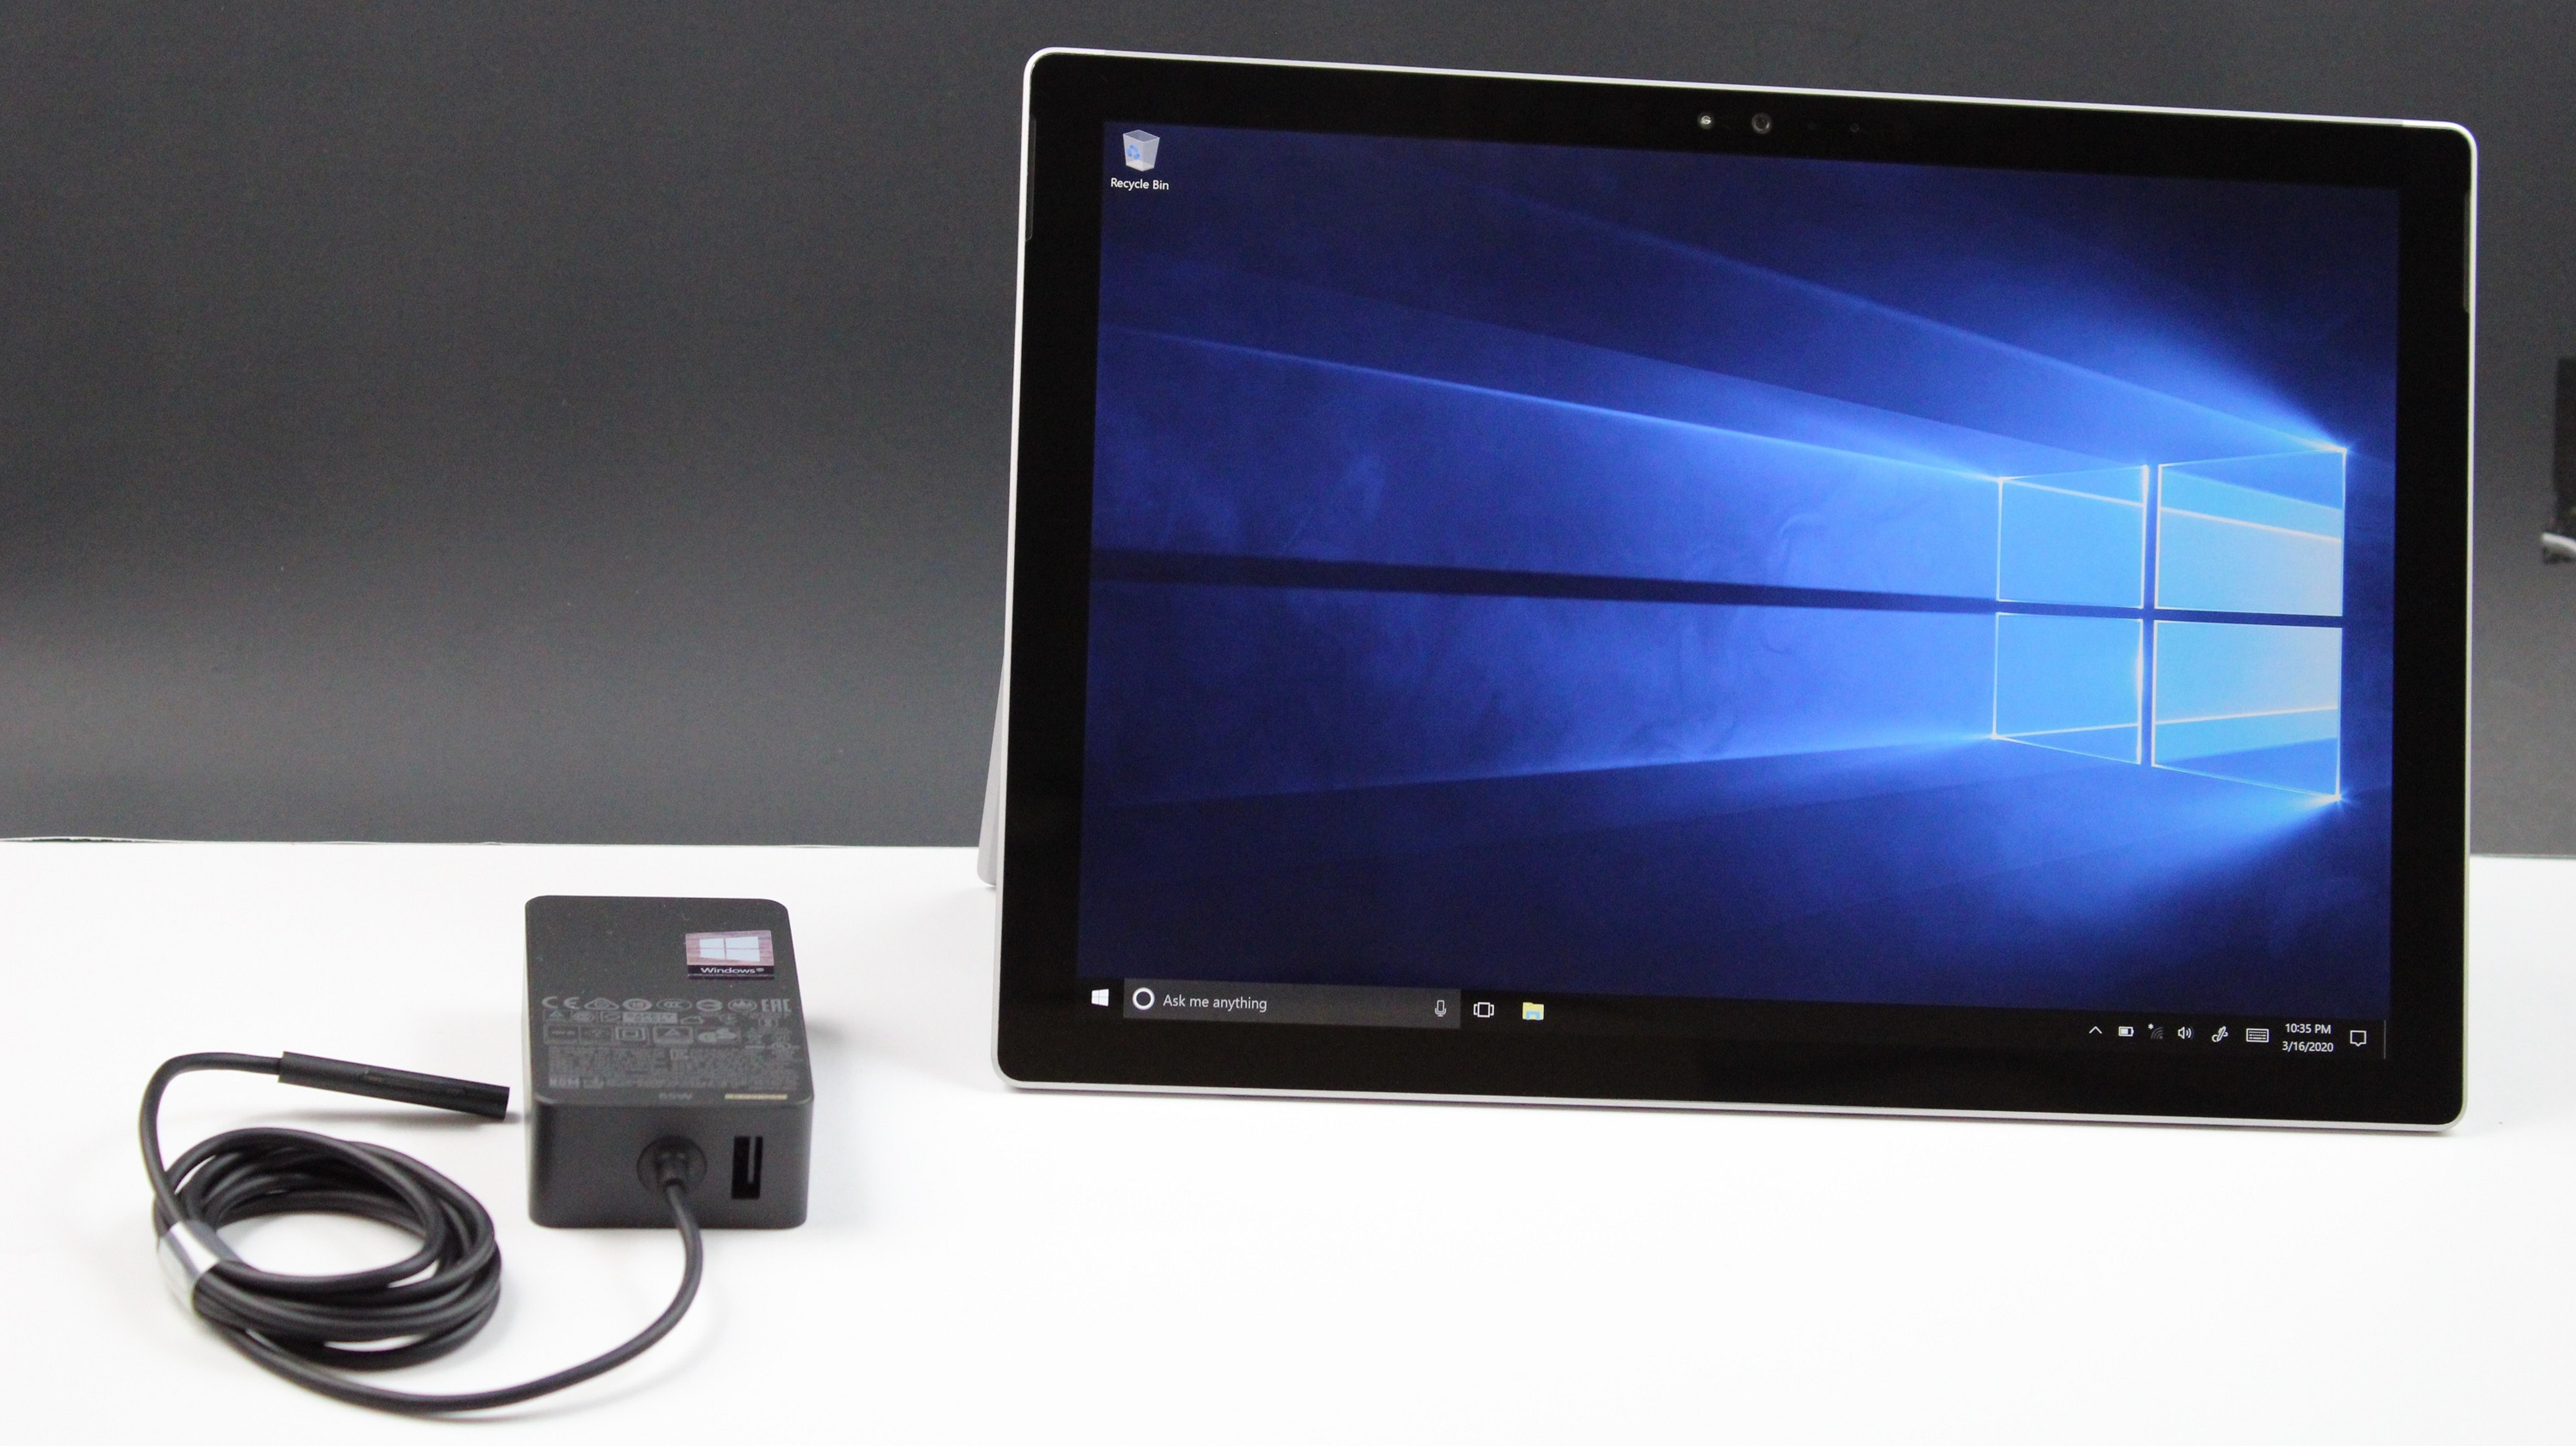 Microsoft Surface Pro 5 1796 I7-7660U 2.50GHz 8GB RAM 256GB SSD Win10 Pro READ